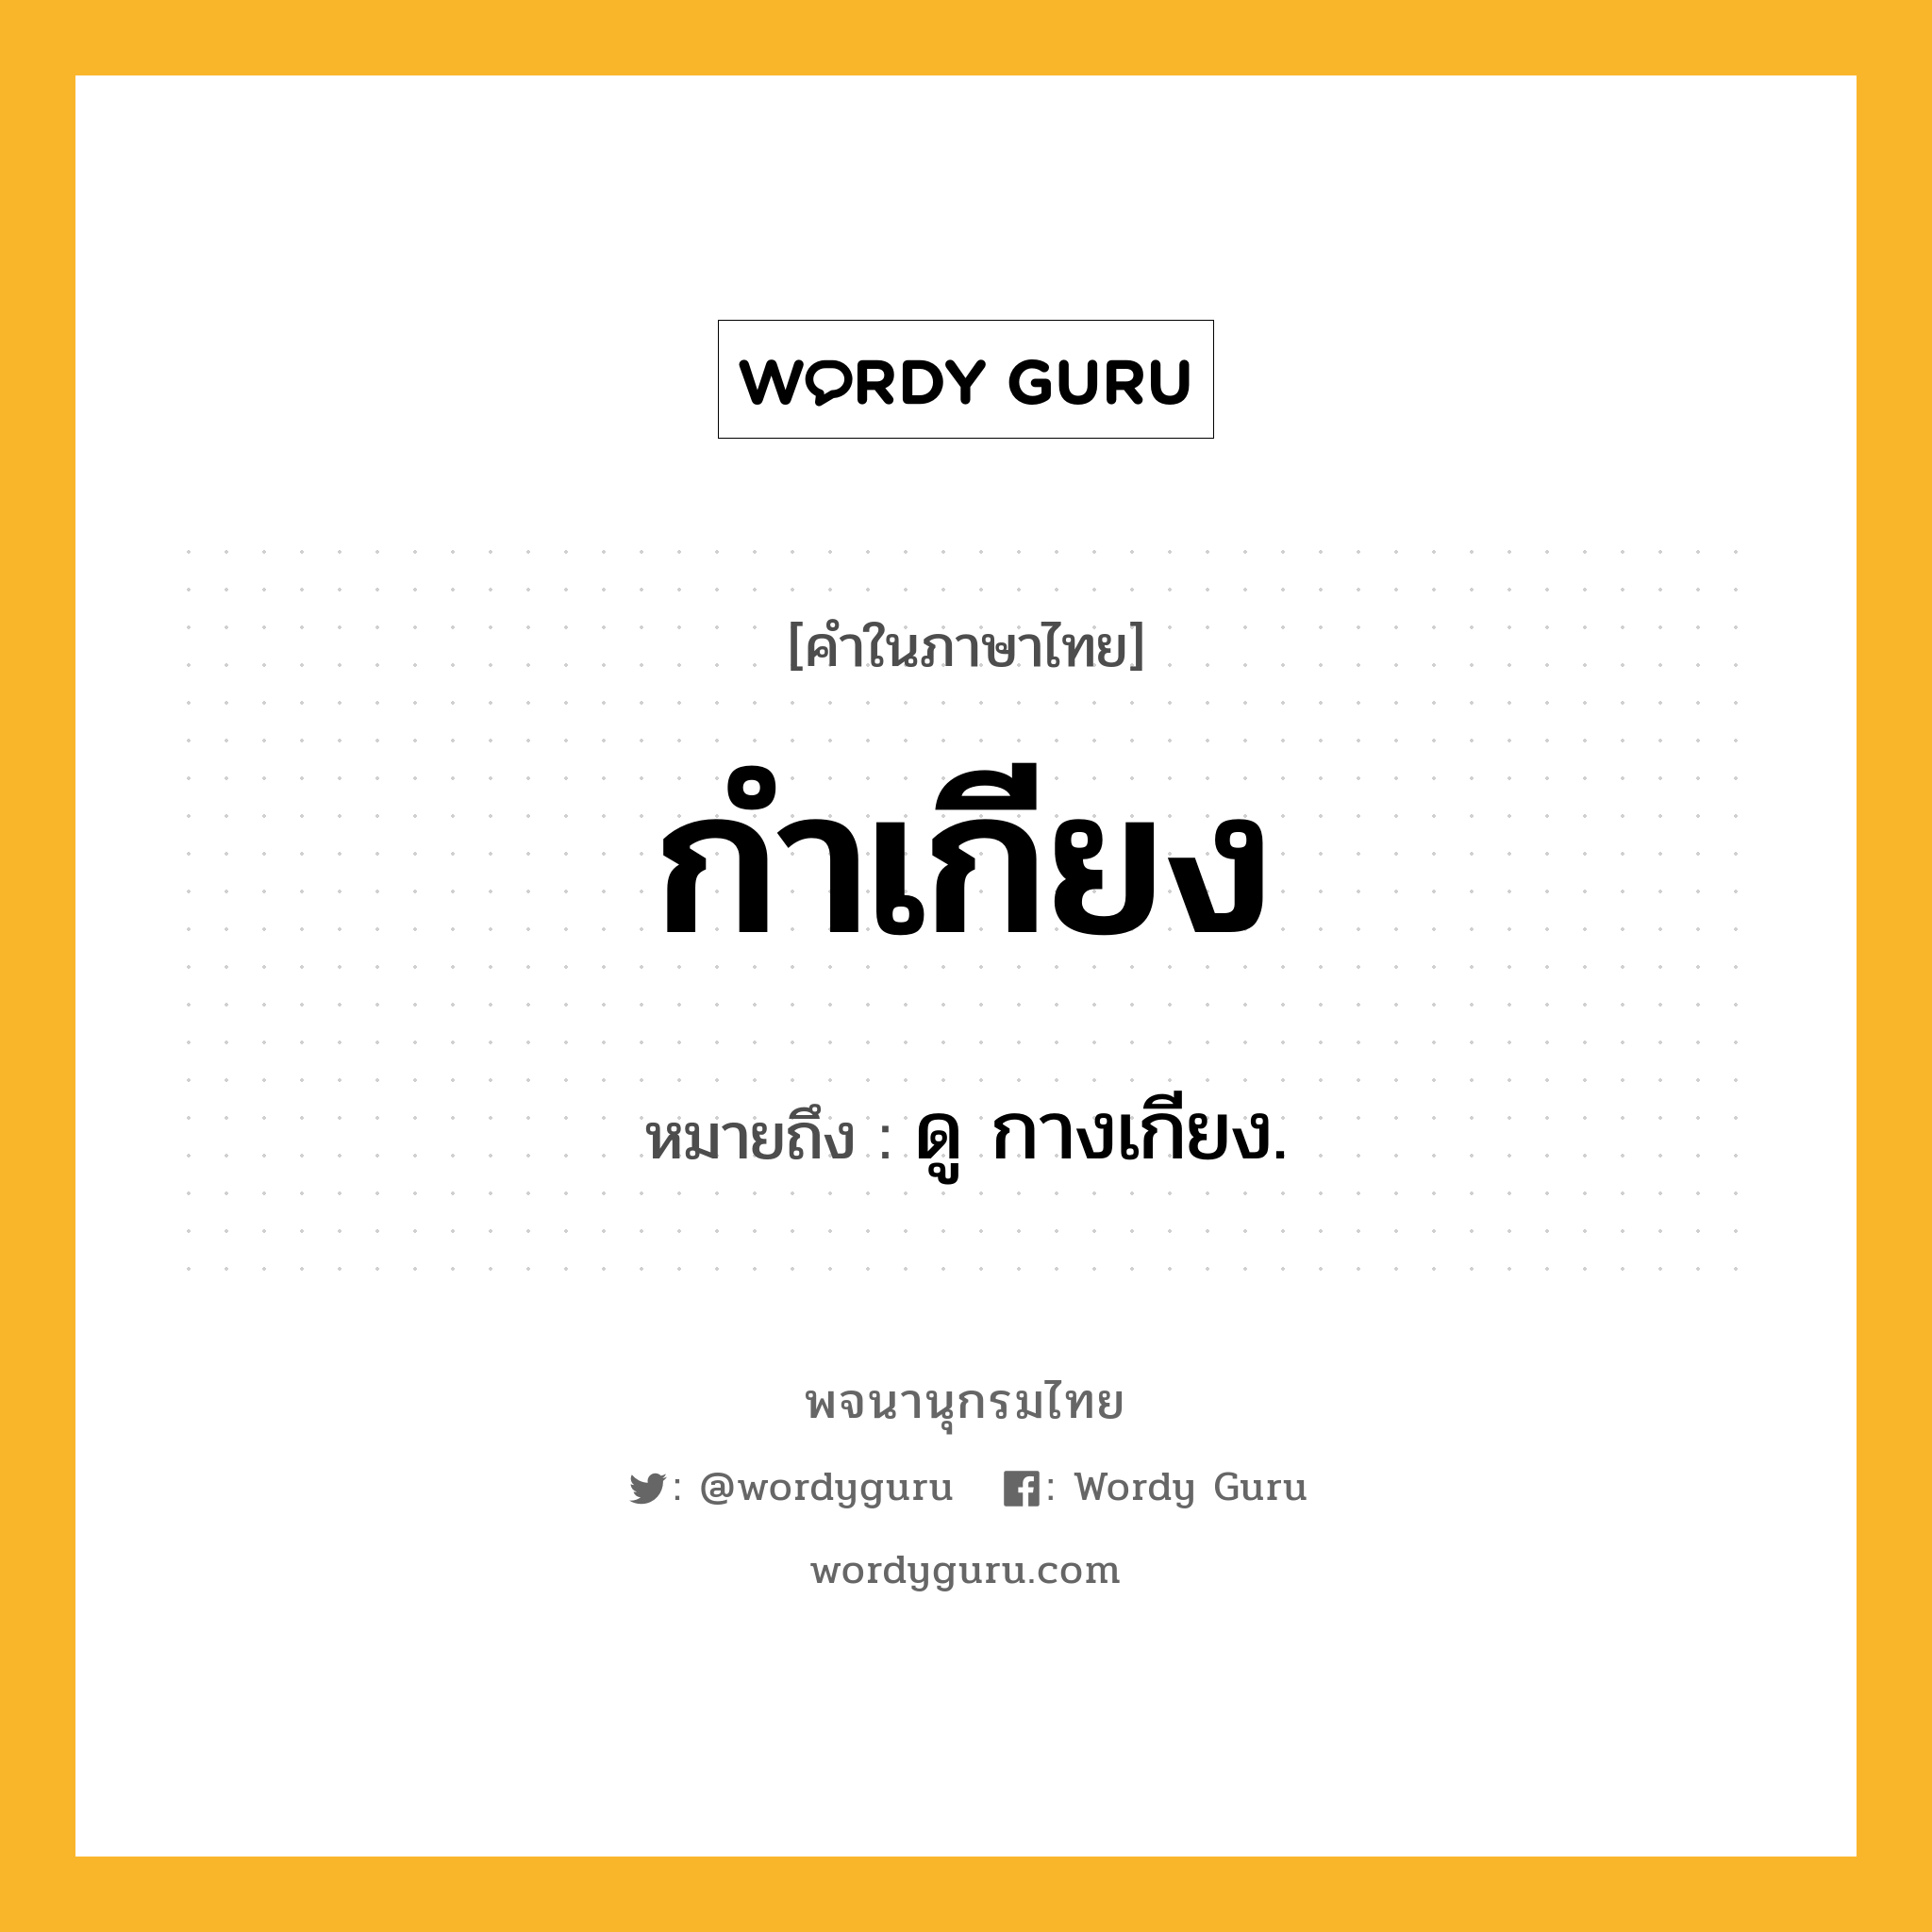 กำเกียง ความหมาย หมายถึงอะไร?, คำในภาษาไทย กำเกียง หมายถึง ดู กางเกียง.